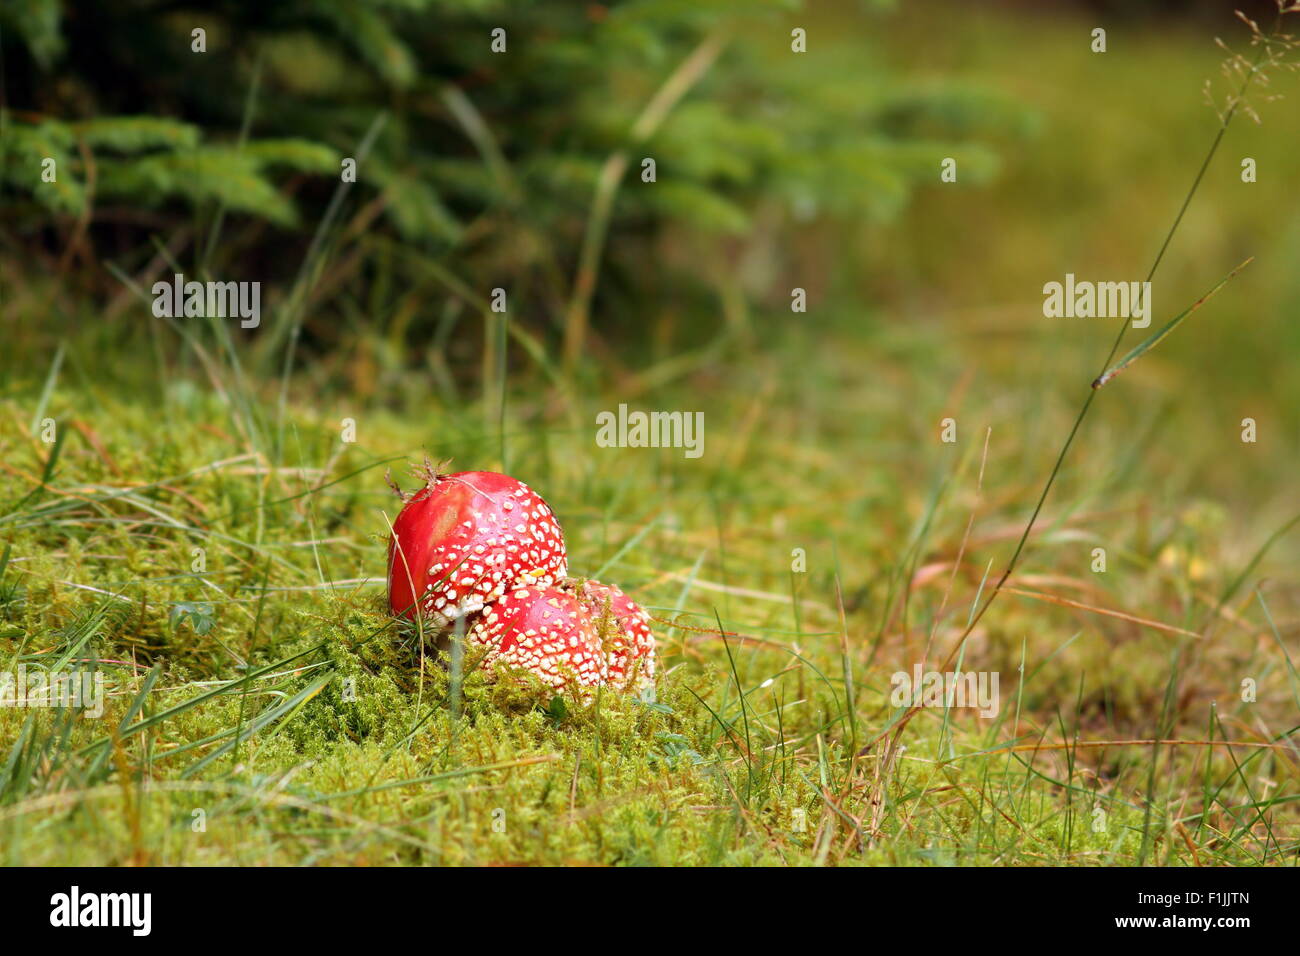 Bella rossa volare fungo amanita muscaria cresce allo stato selvatico Foto Stock